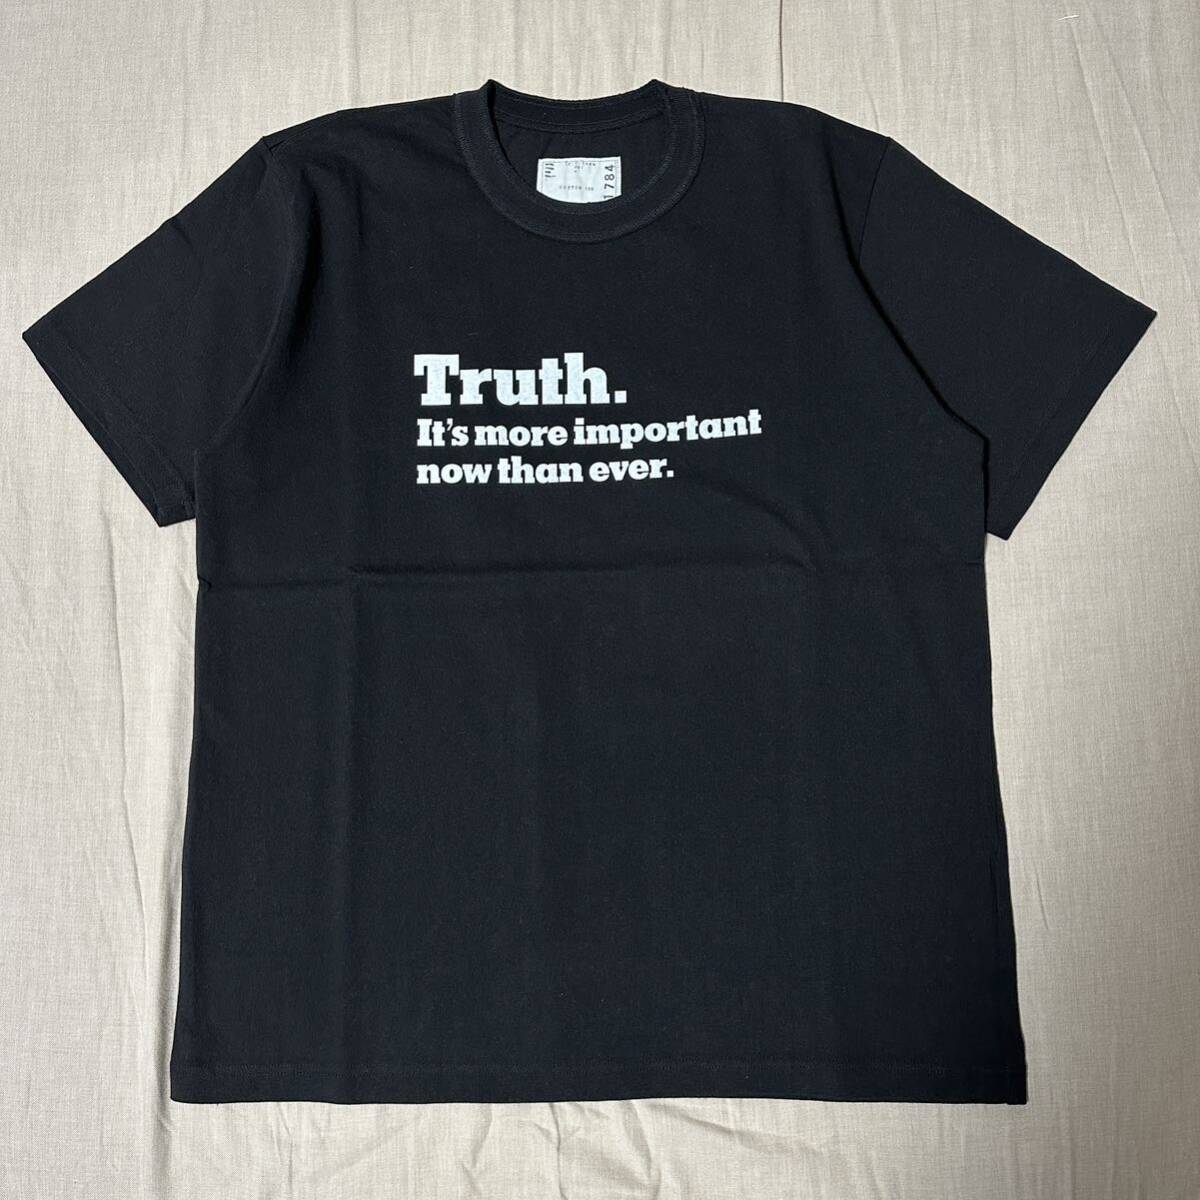 未使用品 希少 sacai×The New York Times 18AW Truth. Tシャツ Size4 Black カットソー スウェット パーカー デニム ブルゾン_画像4